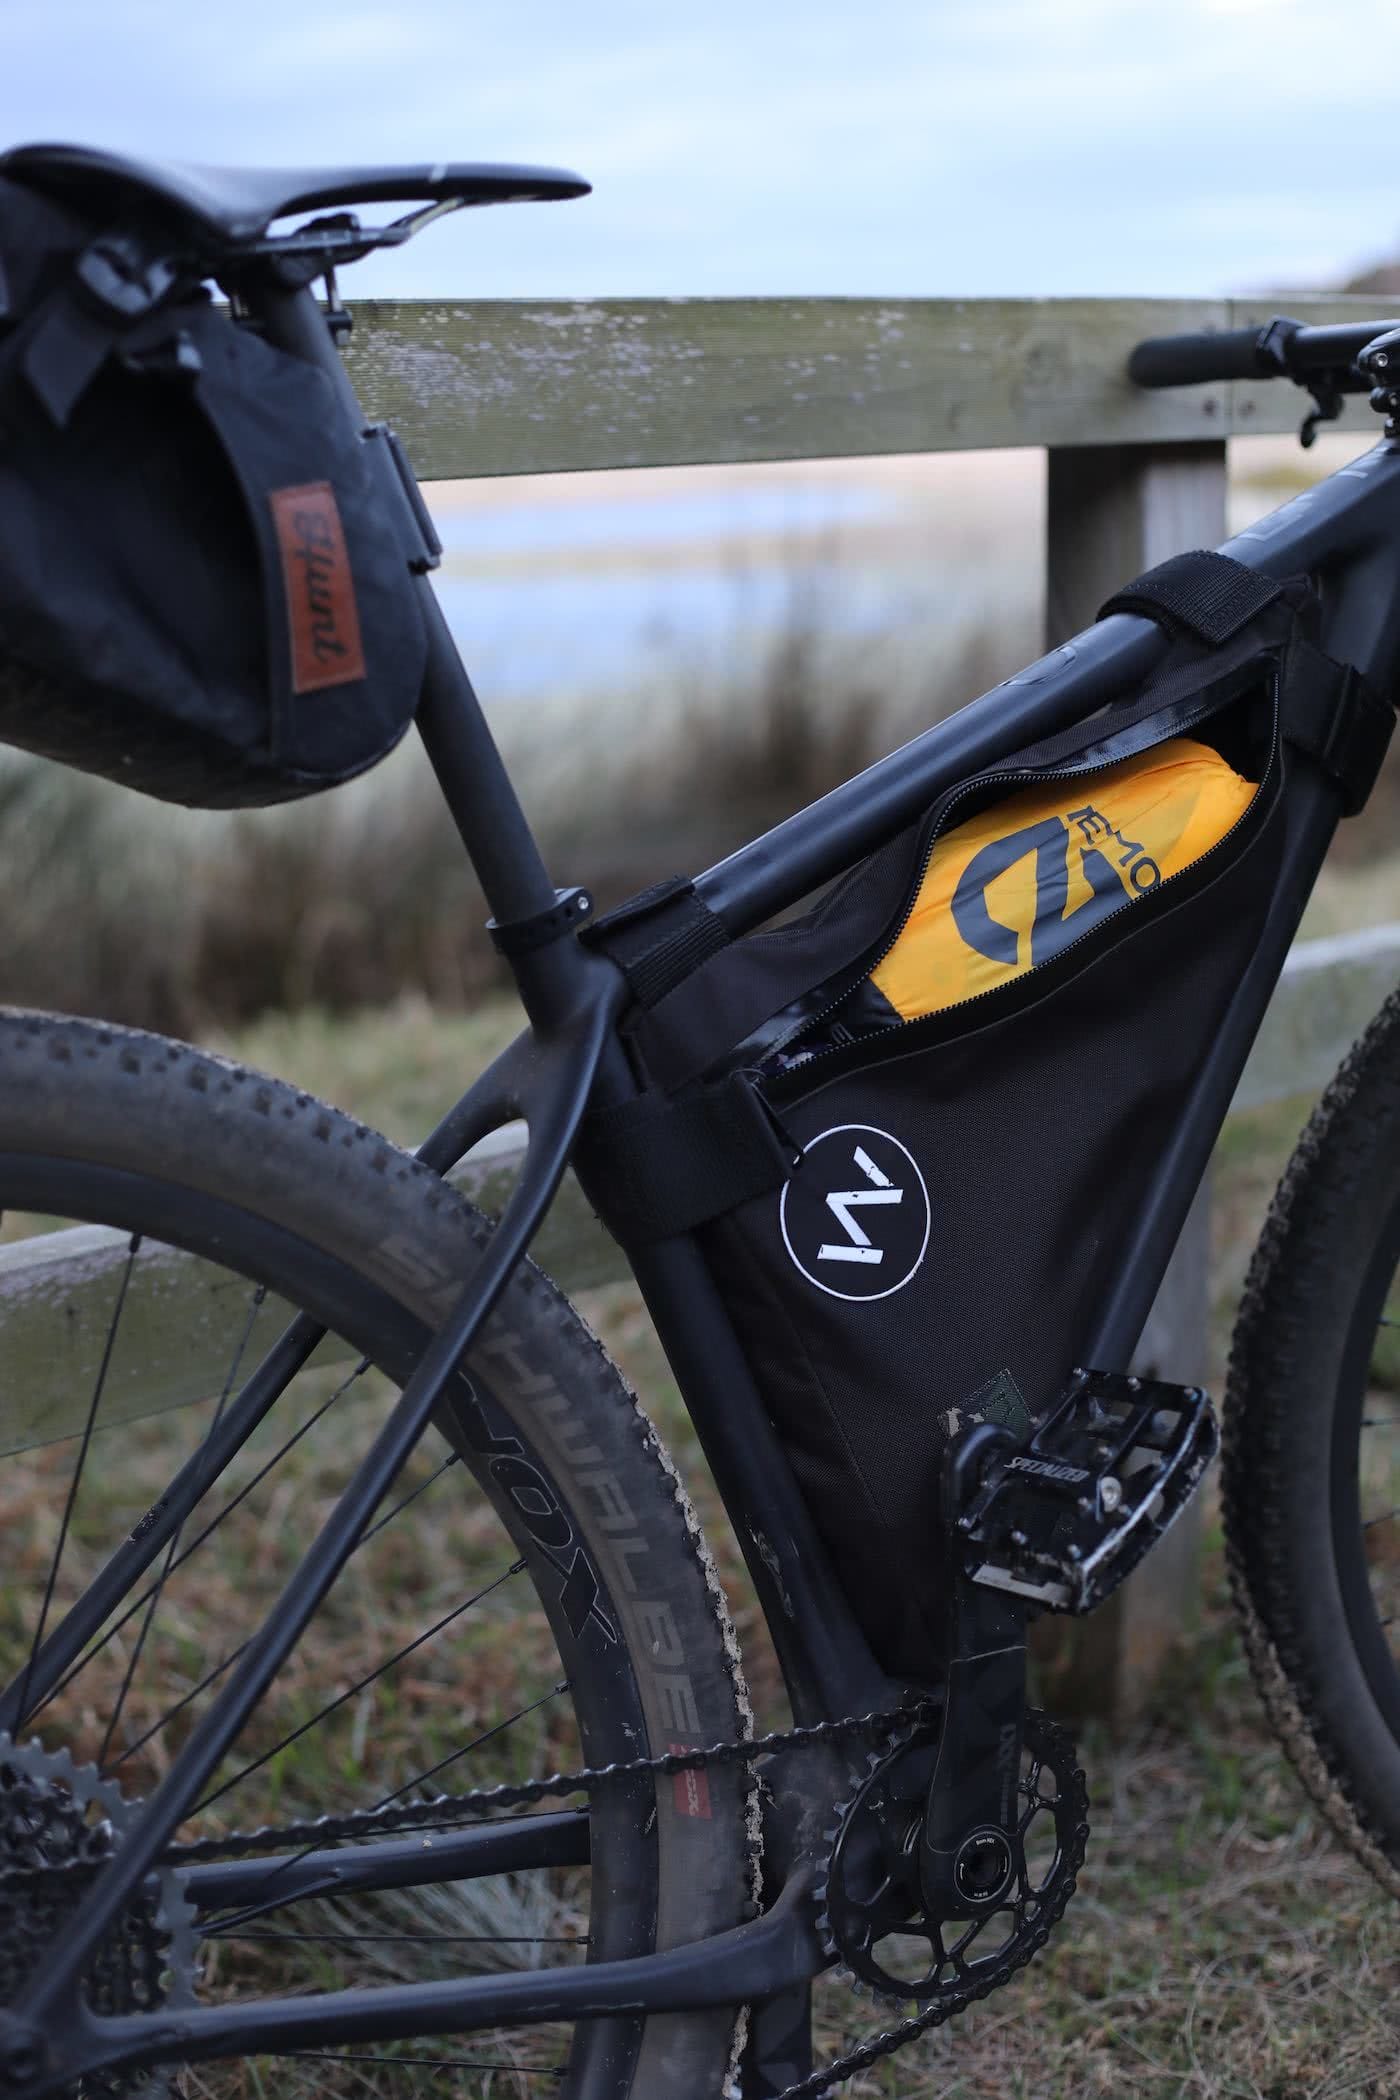 NEMO Kyan Mummy Bag & Tensor Ultralight Sleeping Pad // Gear Review by Mattie Gould Tensor mat in a bike bag